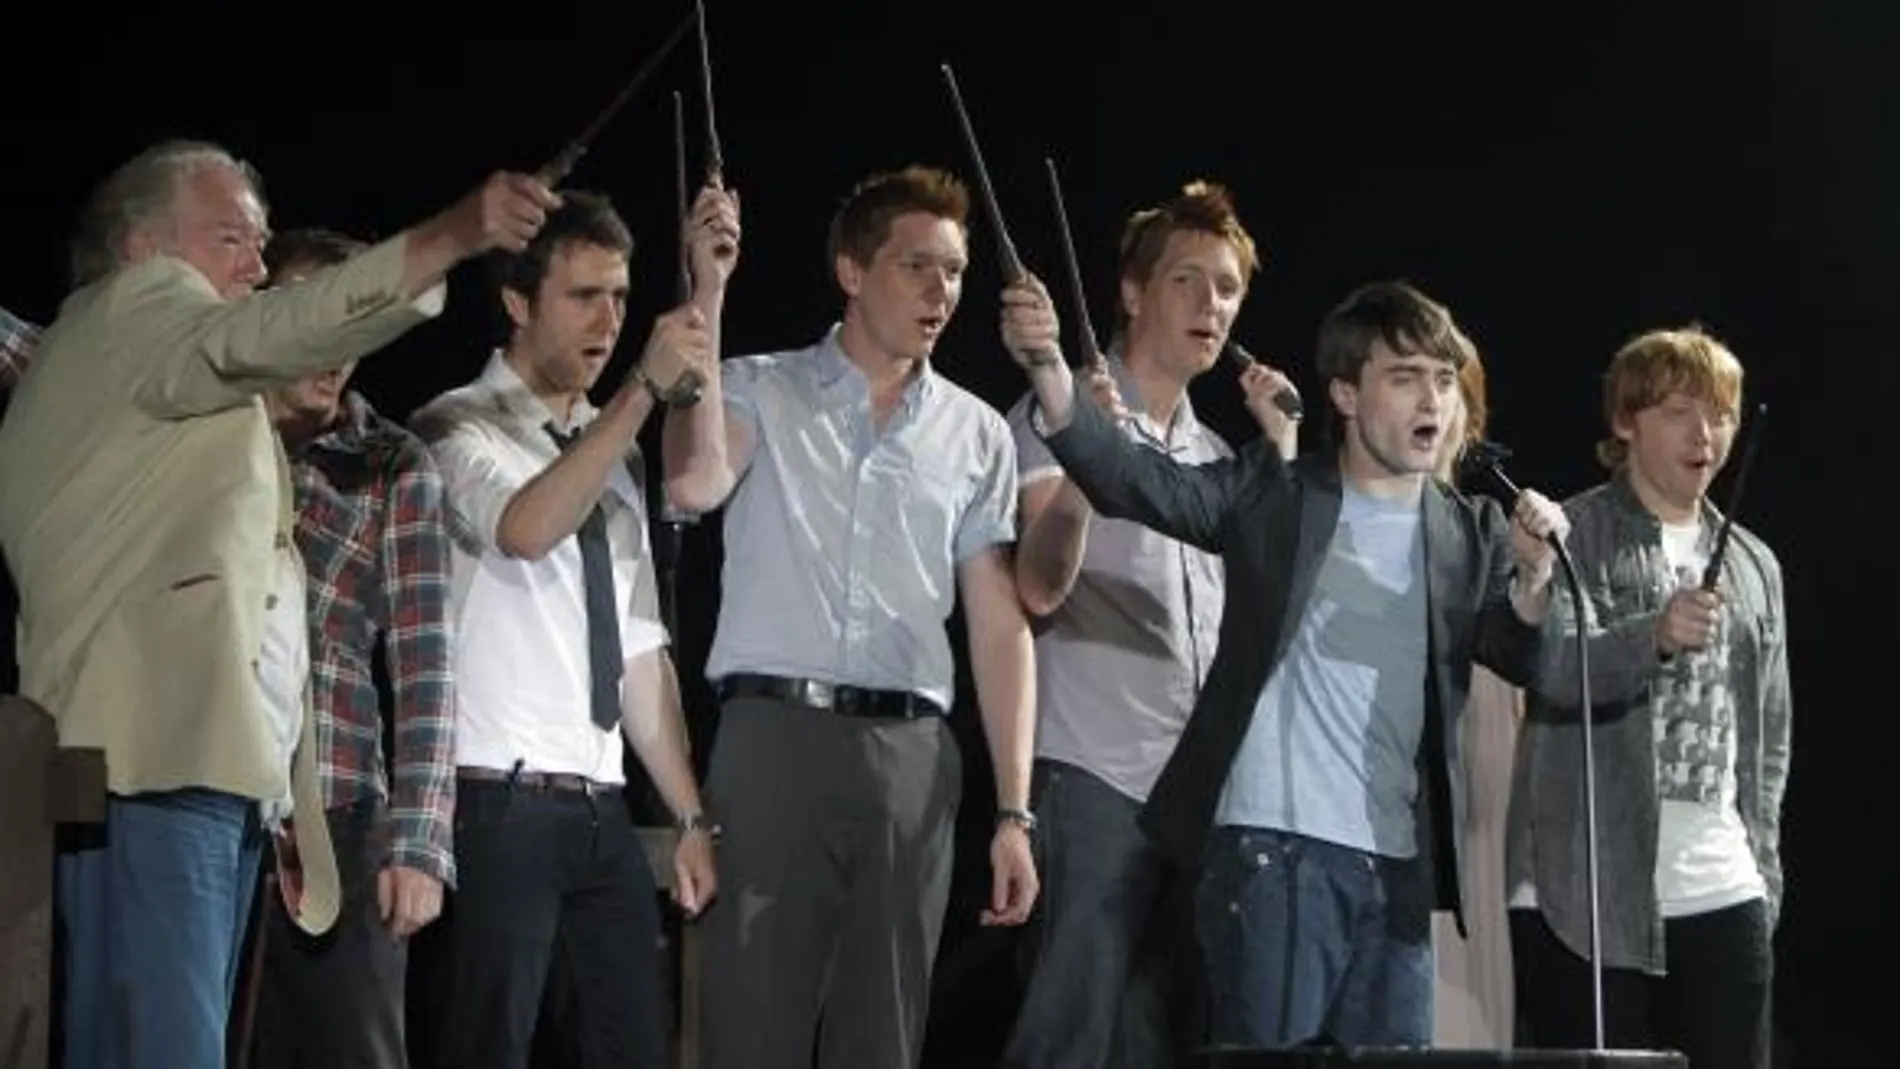 Daniel Radcliffe junto al resto de los actores de las películas "Harry Potter"